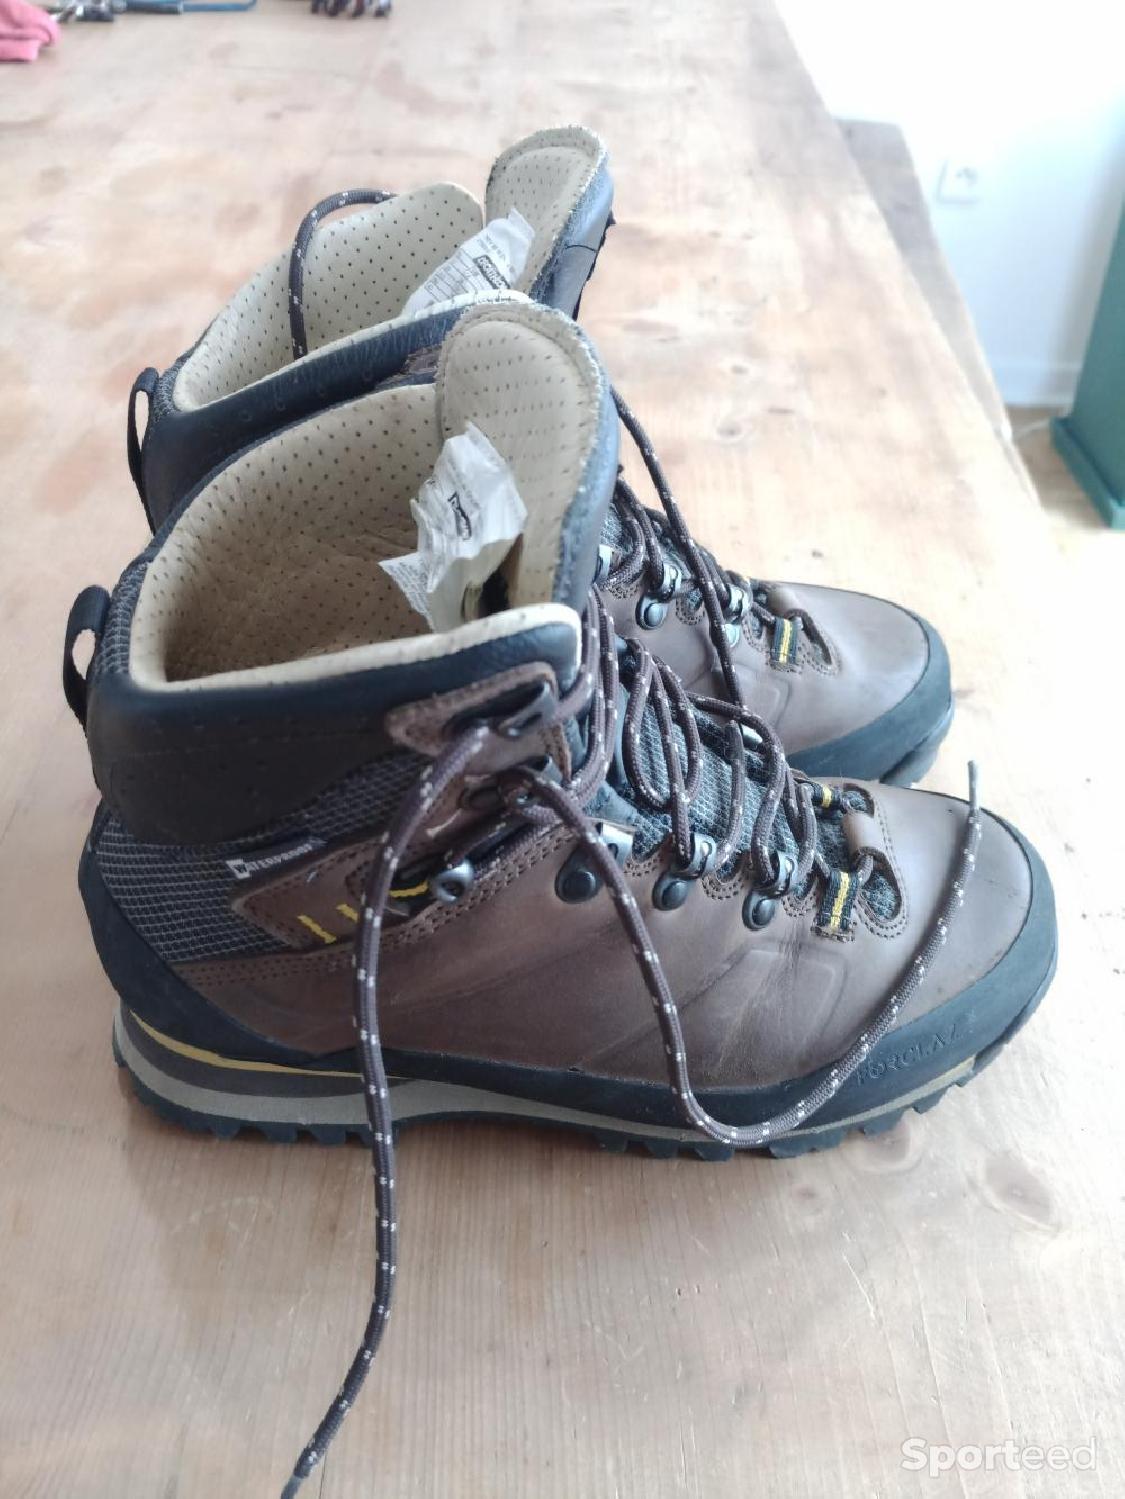 Chaussures Imperméables de Randonnée pour Homme Quechua MH500 MID - Grises,  du 39 au 47 –